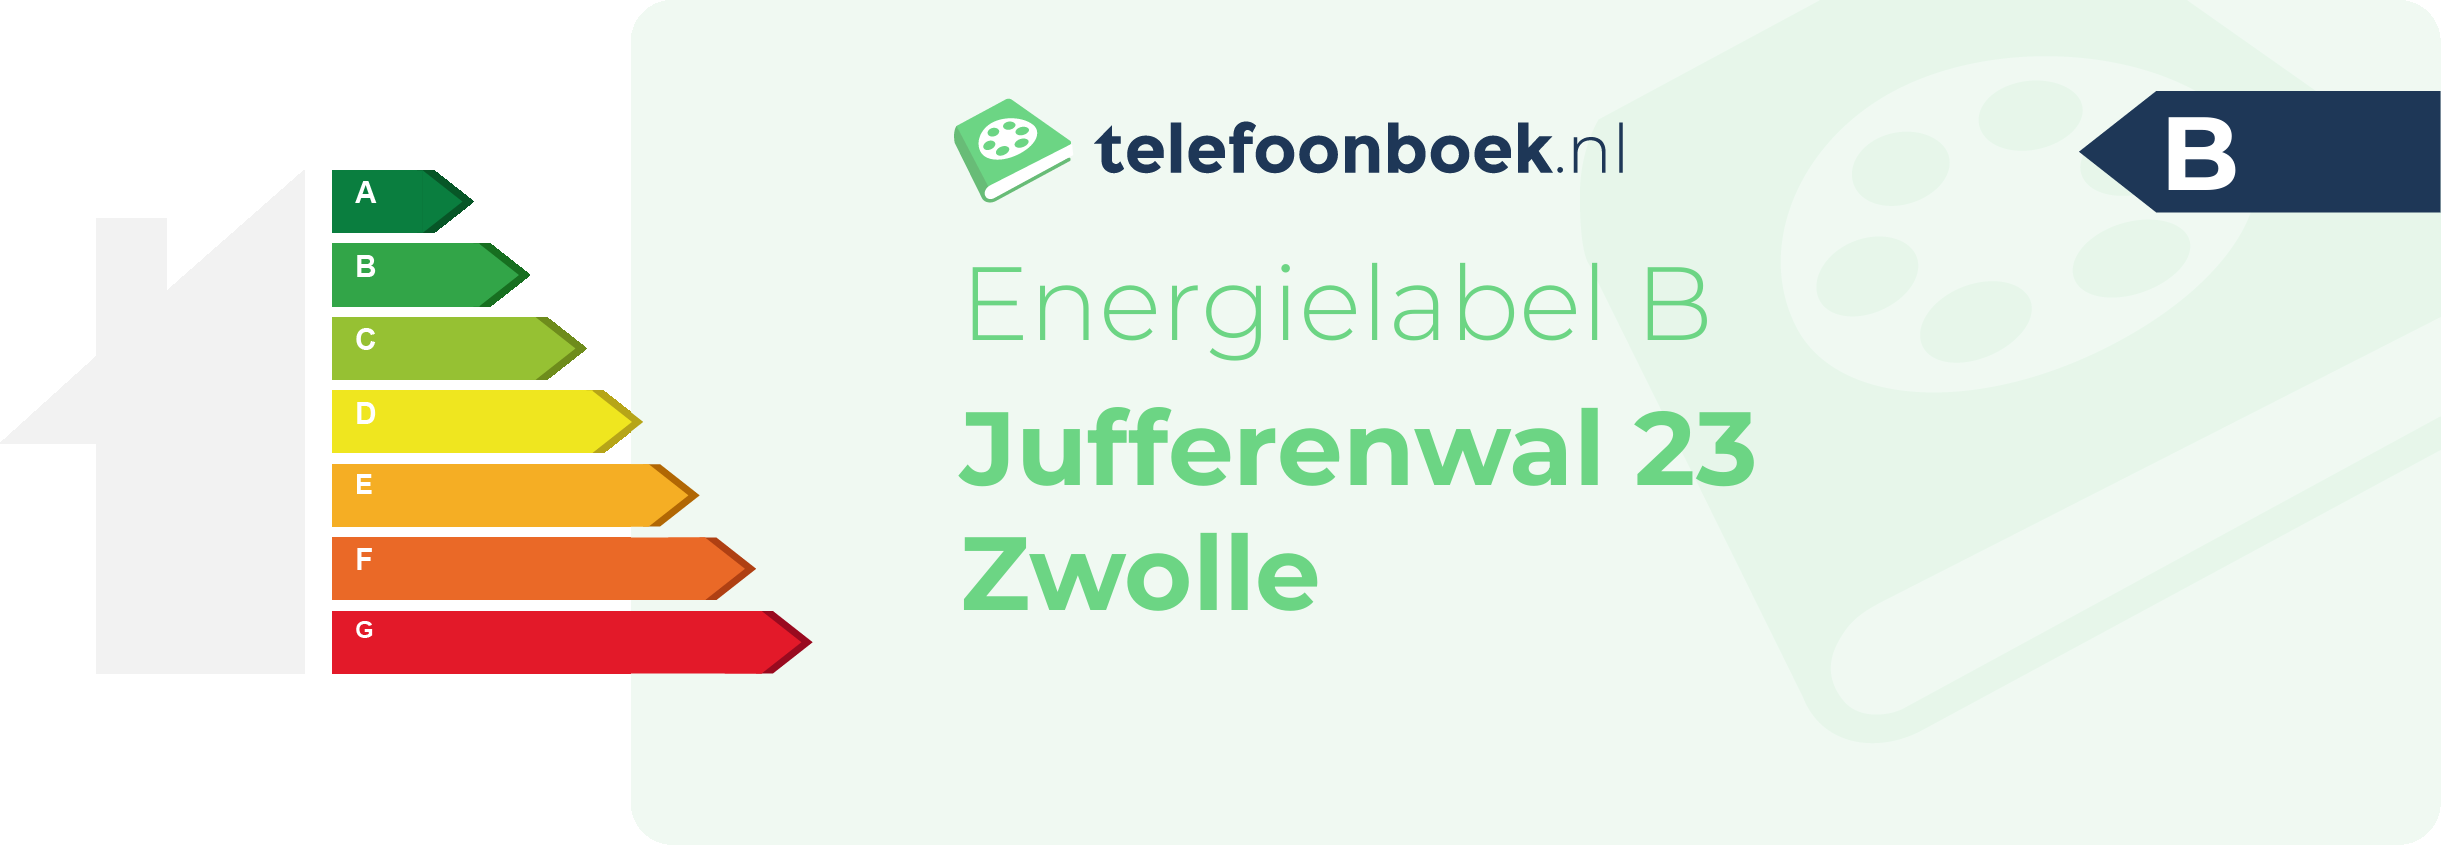 Energielabel Jufferenwal 23 Zwolle